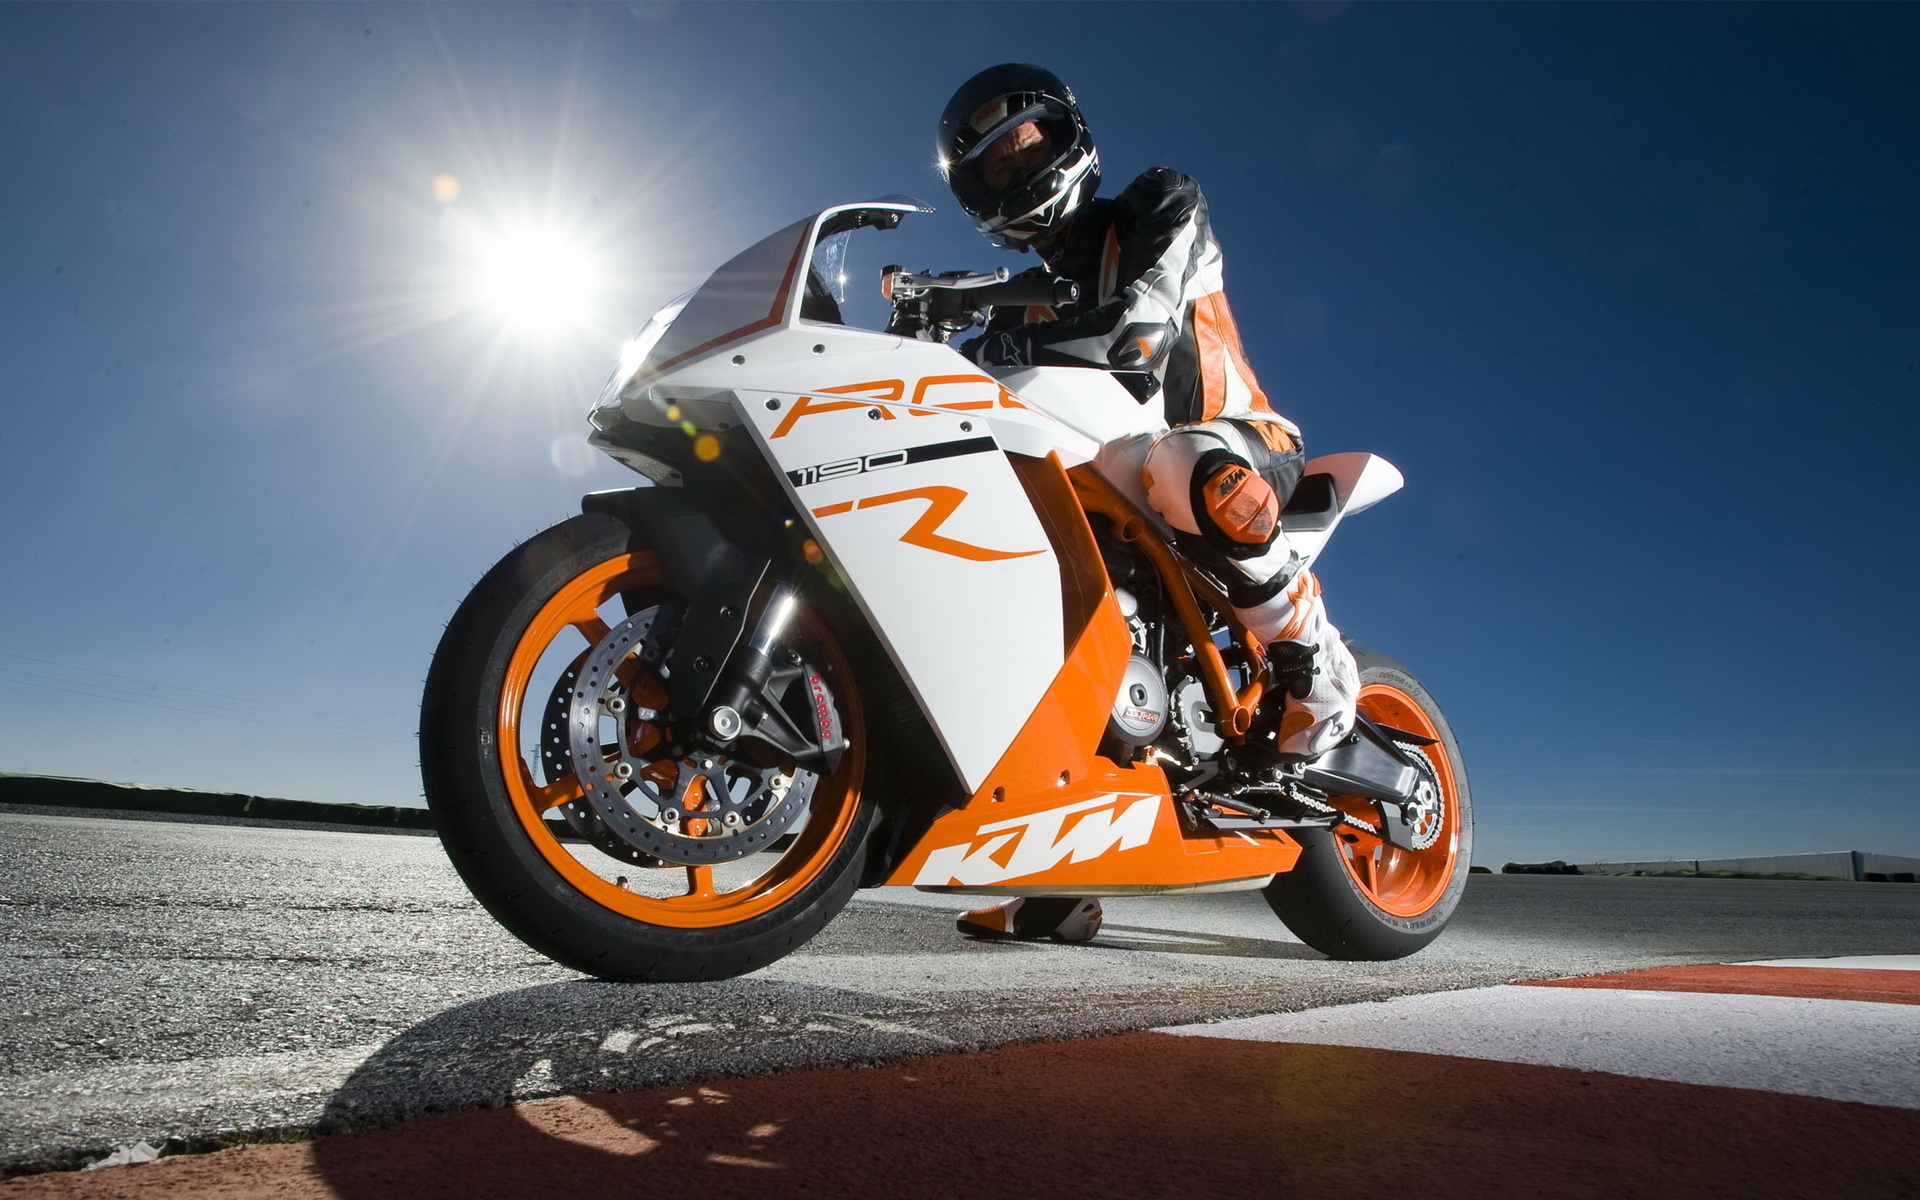 Wallpapers motorcyclist sport bike sports on the desktop